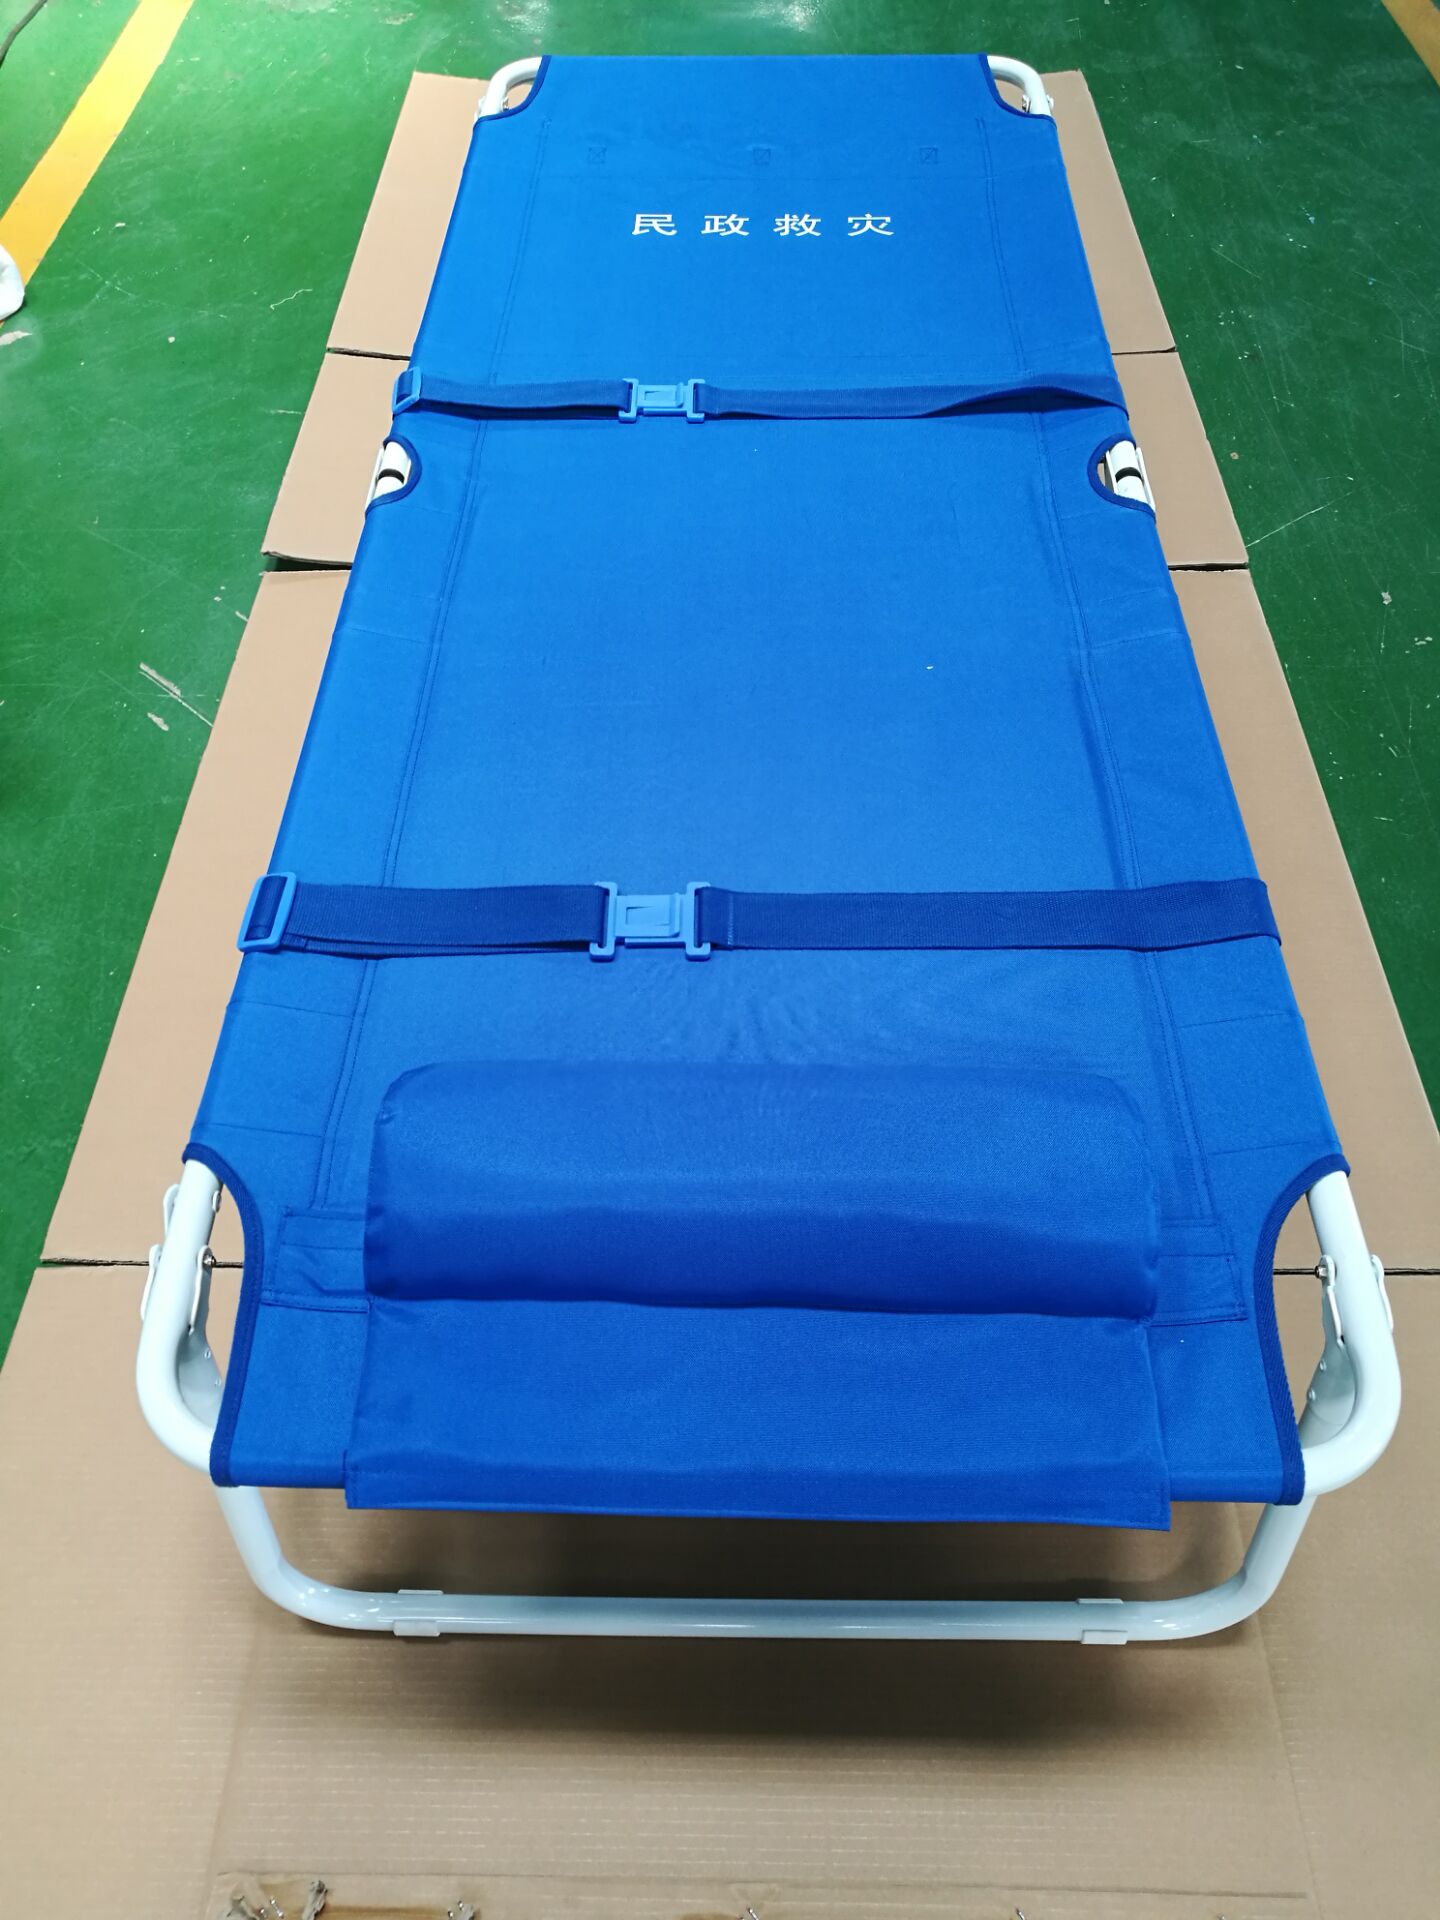 应急救灾蓝色折叠床 户外简易便携折叠床旅行床医疗陪护床担架床